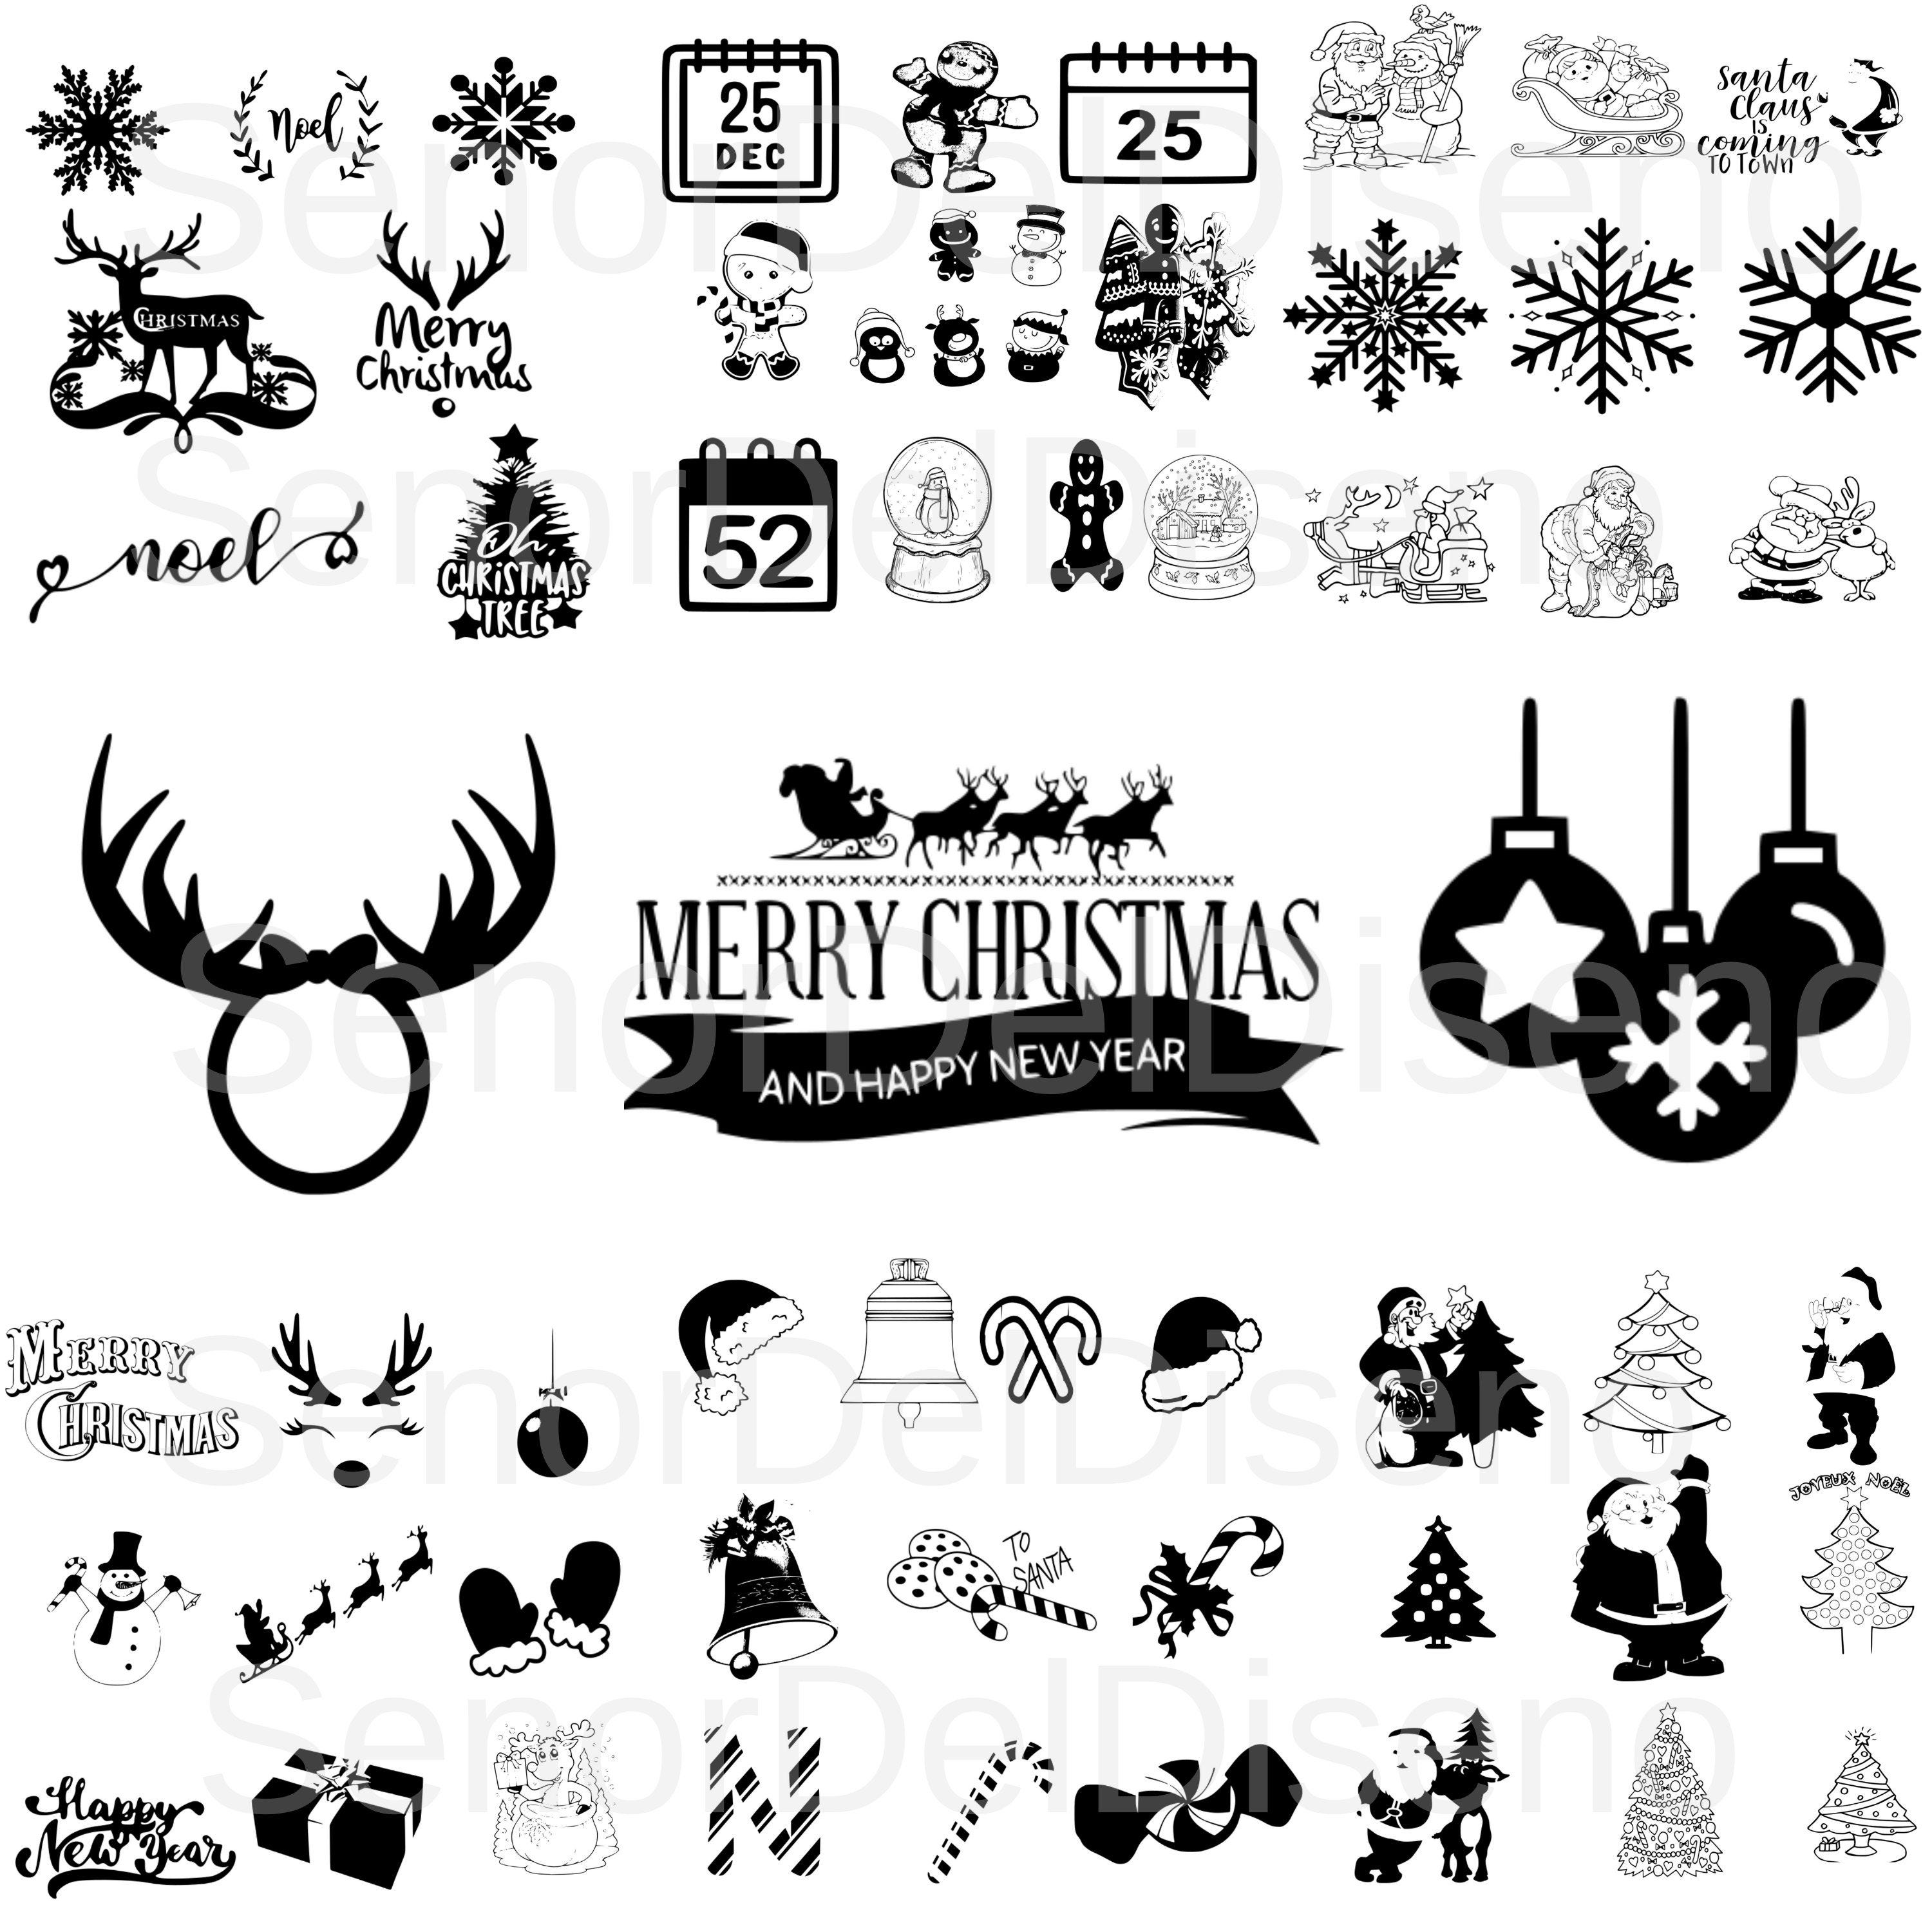 CHRISTMAS SVG Bundle, CHRISTMAS Clipart, Christmas Cut Files, Christmas Svg Files For Cricut